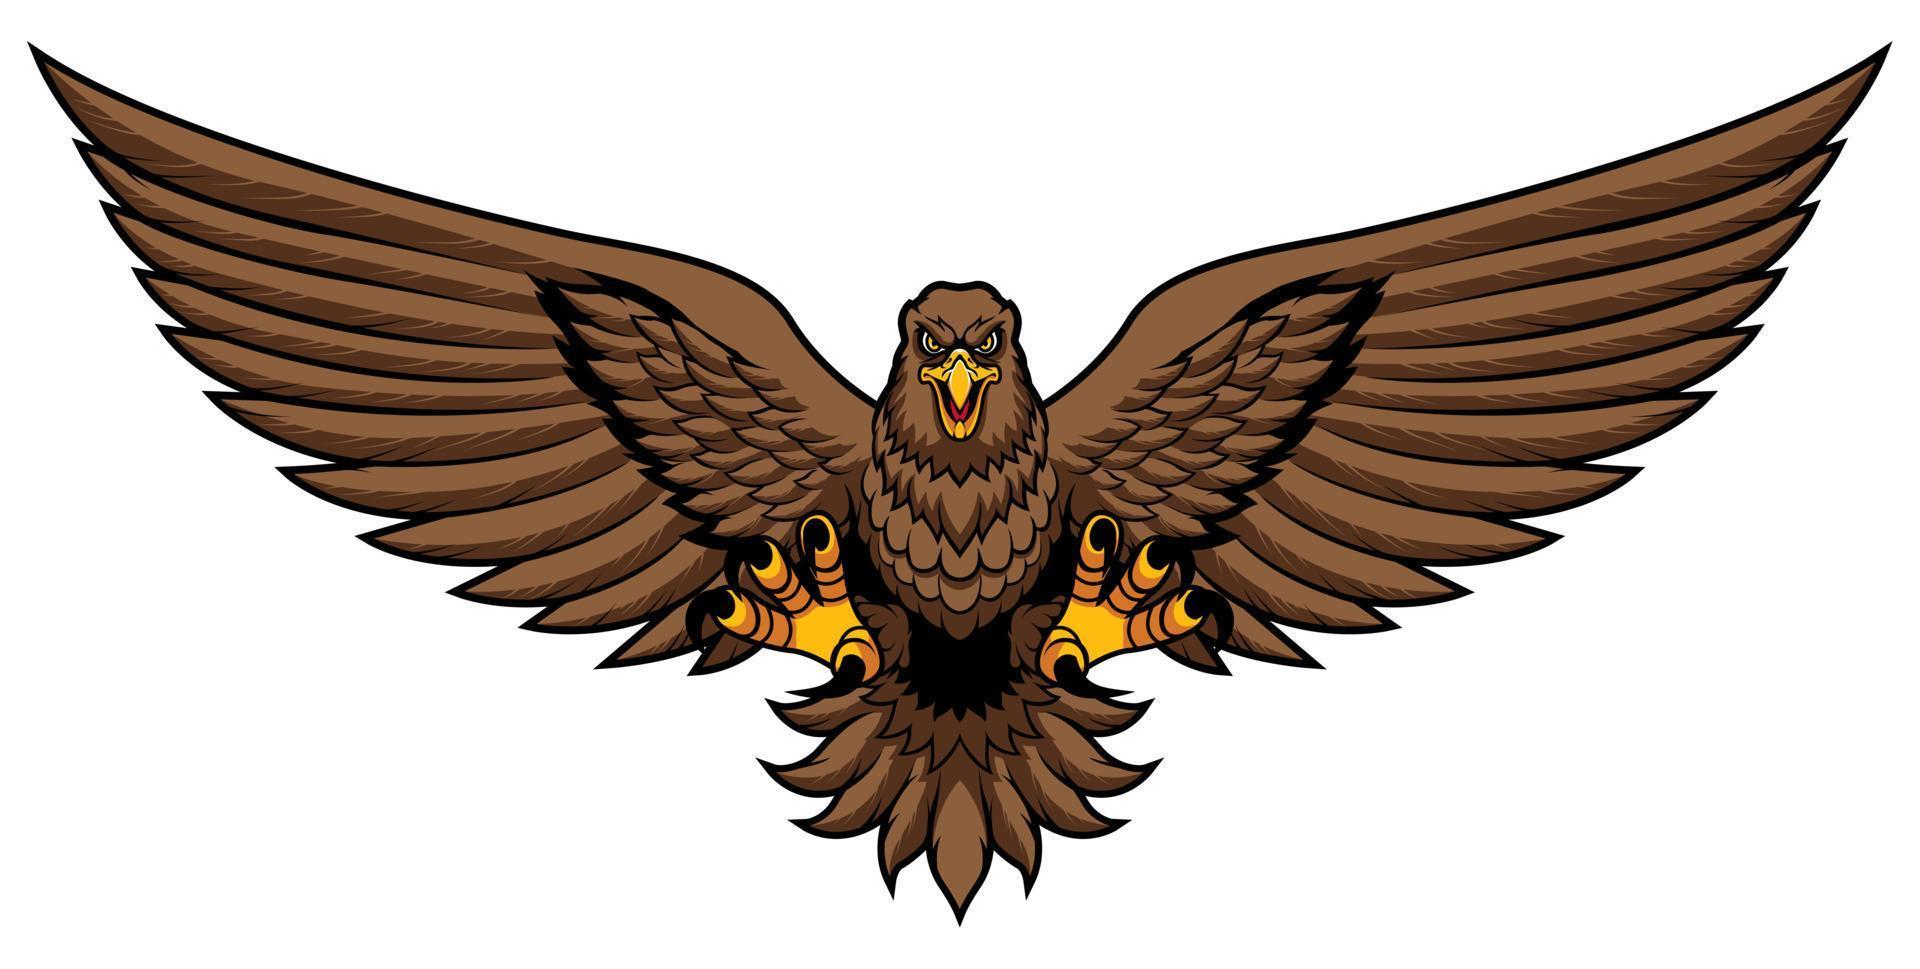 Golden Eagle Attack Mascot vector